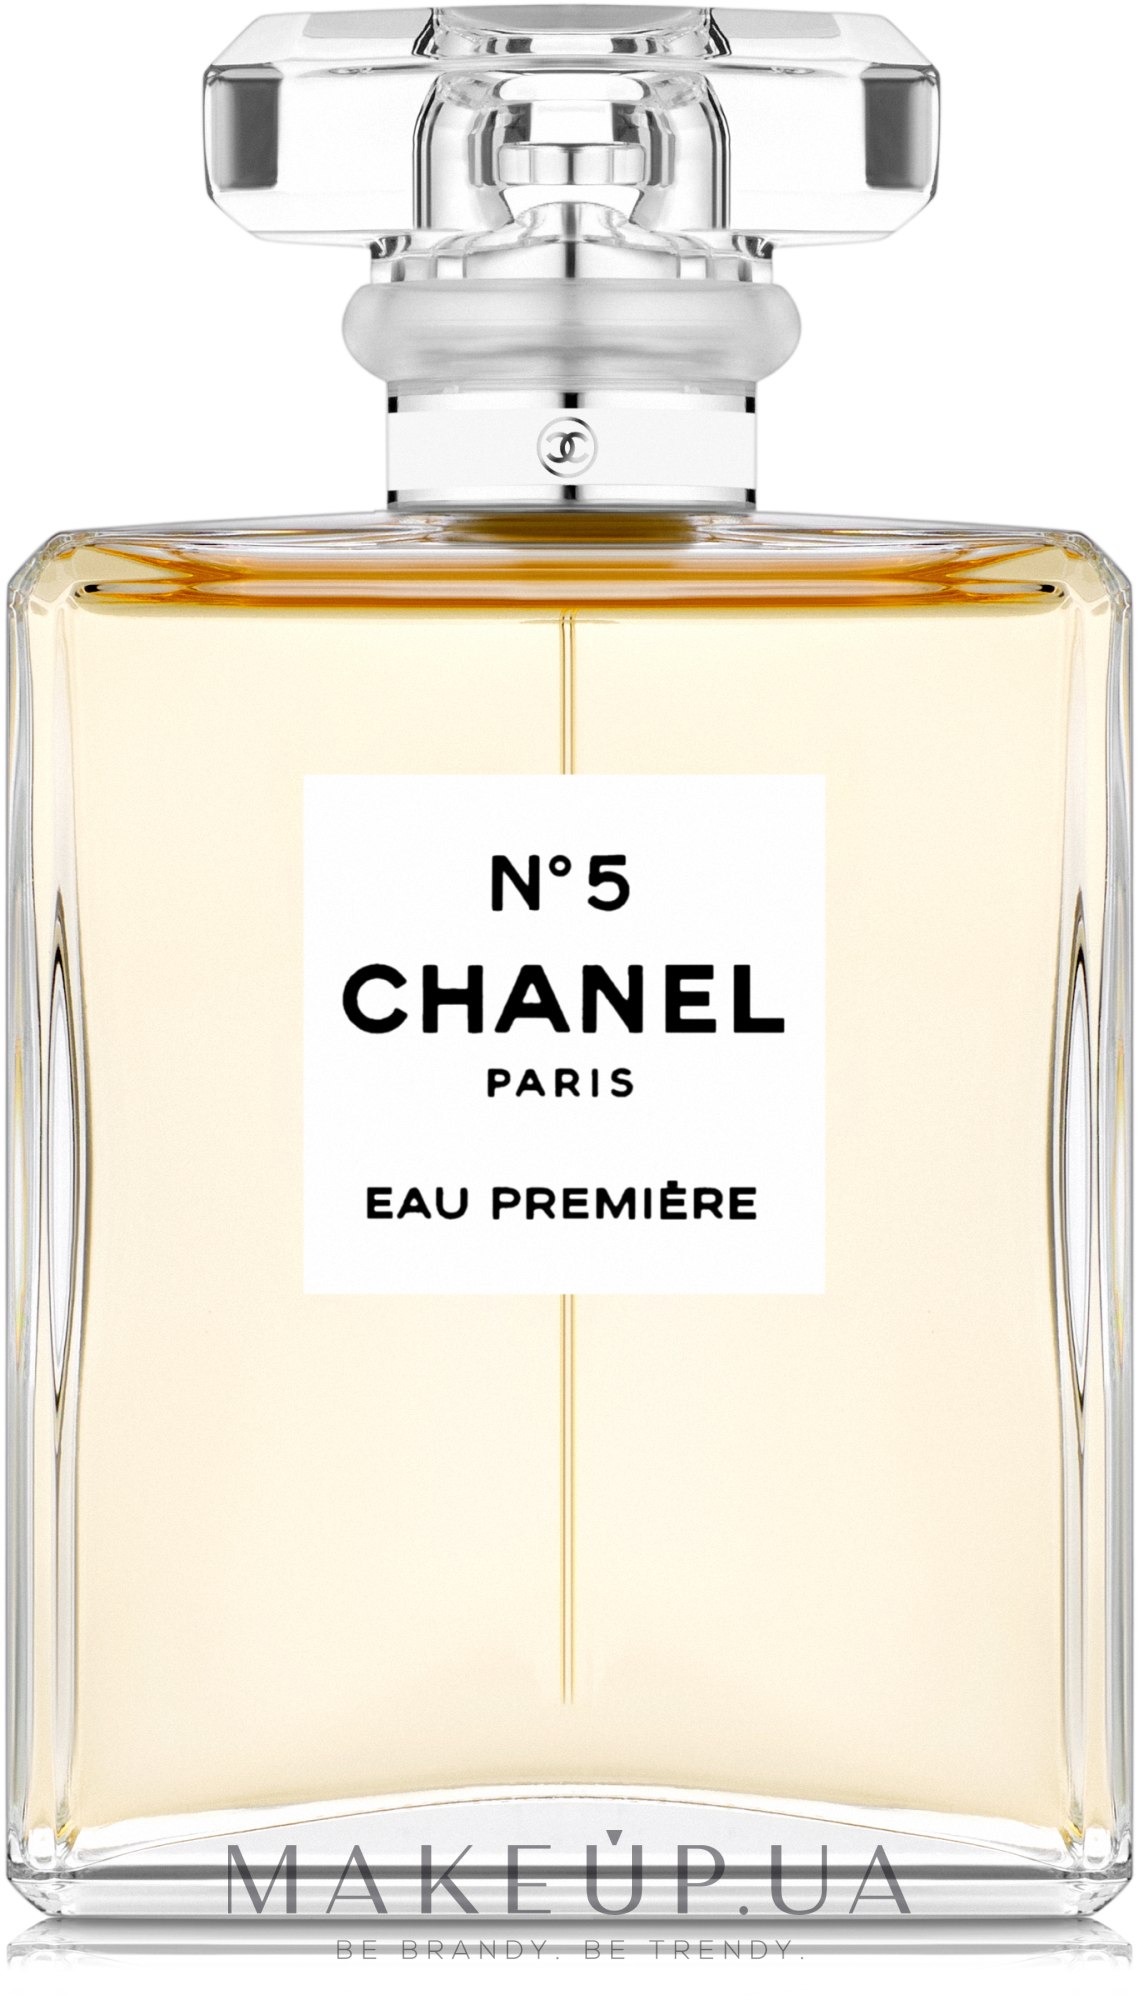 Аромат  легенда Chanel N5  Отзывы покупателей  Косметиста